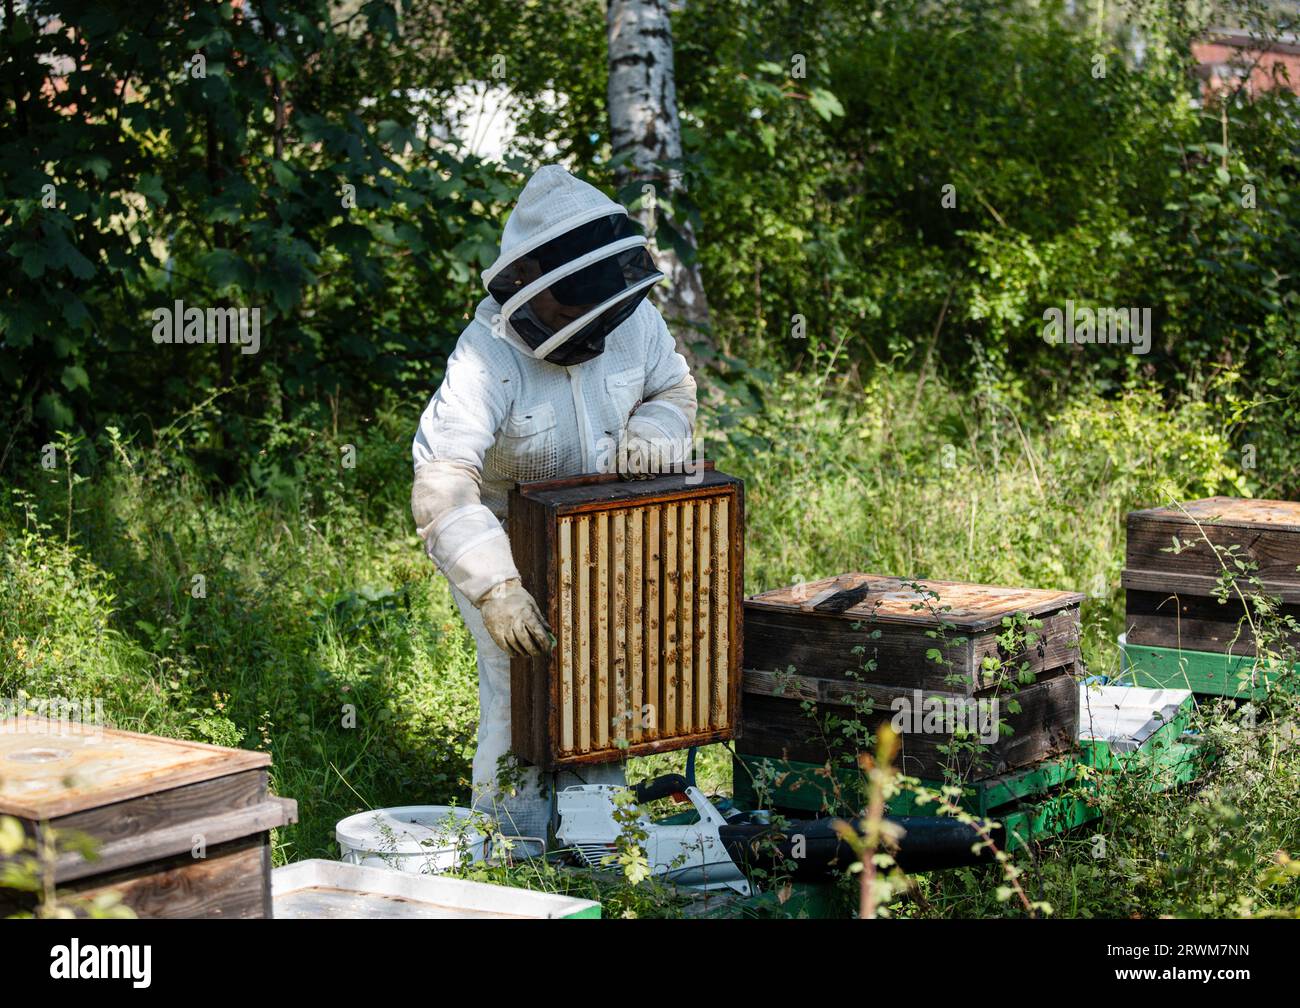 Ein Imker in Schutzkleidung, der in einer üppigen Umgebung, umgeben von grünen Büschen und Bäumen, ihre Bienenstöcke pflegt. Die Szene zeigt den Ser Stockfoto